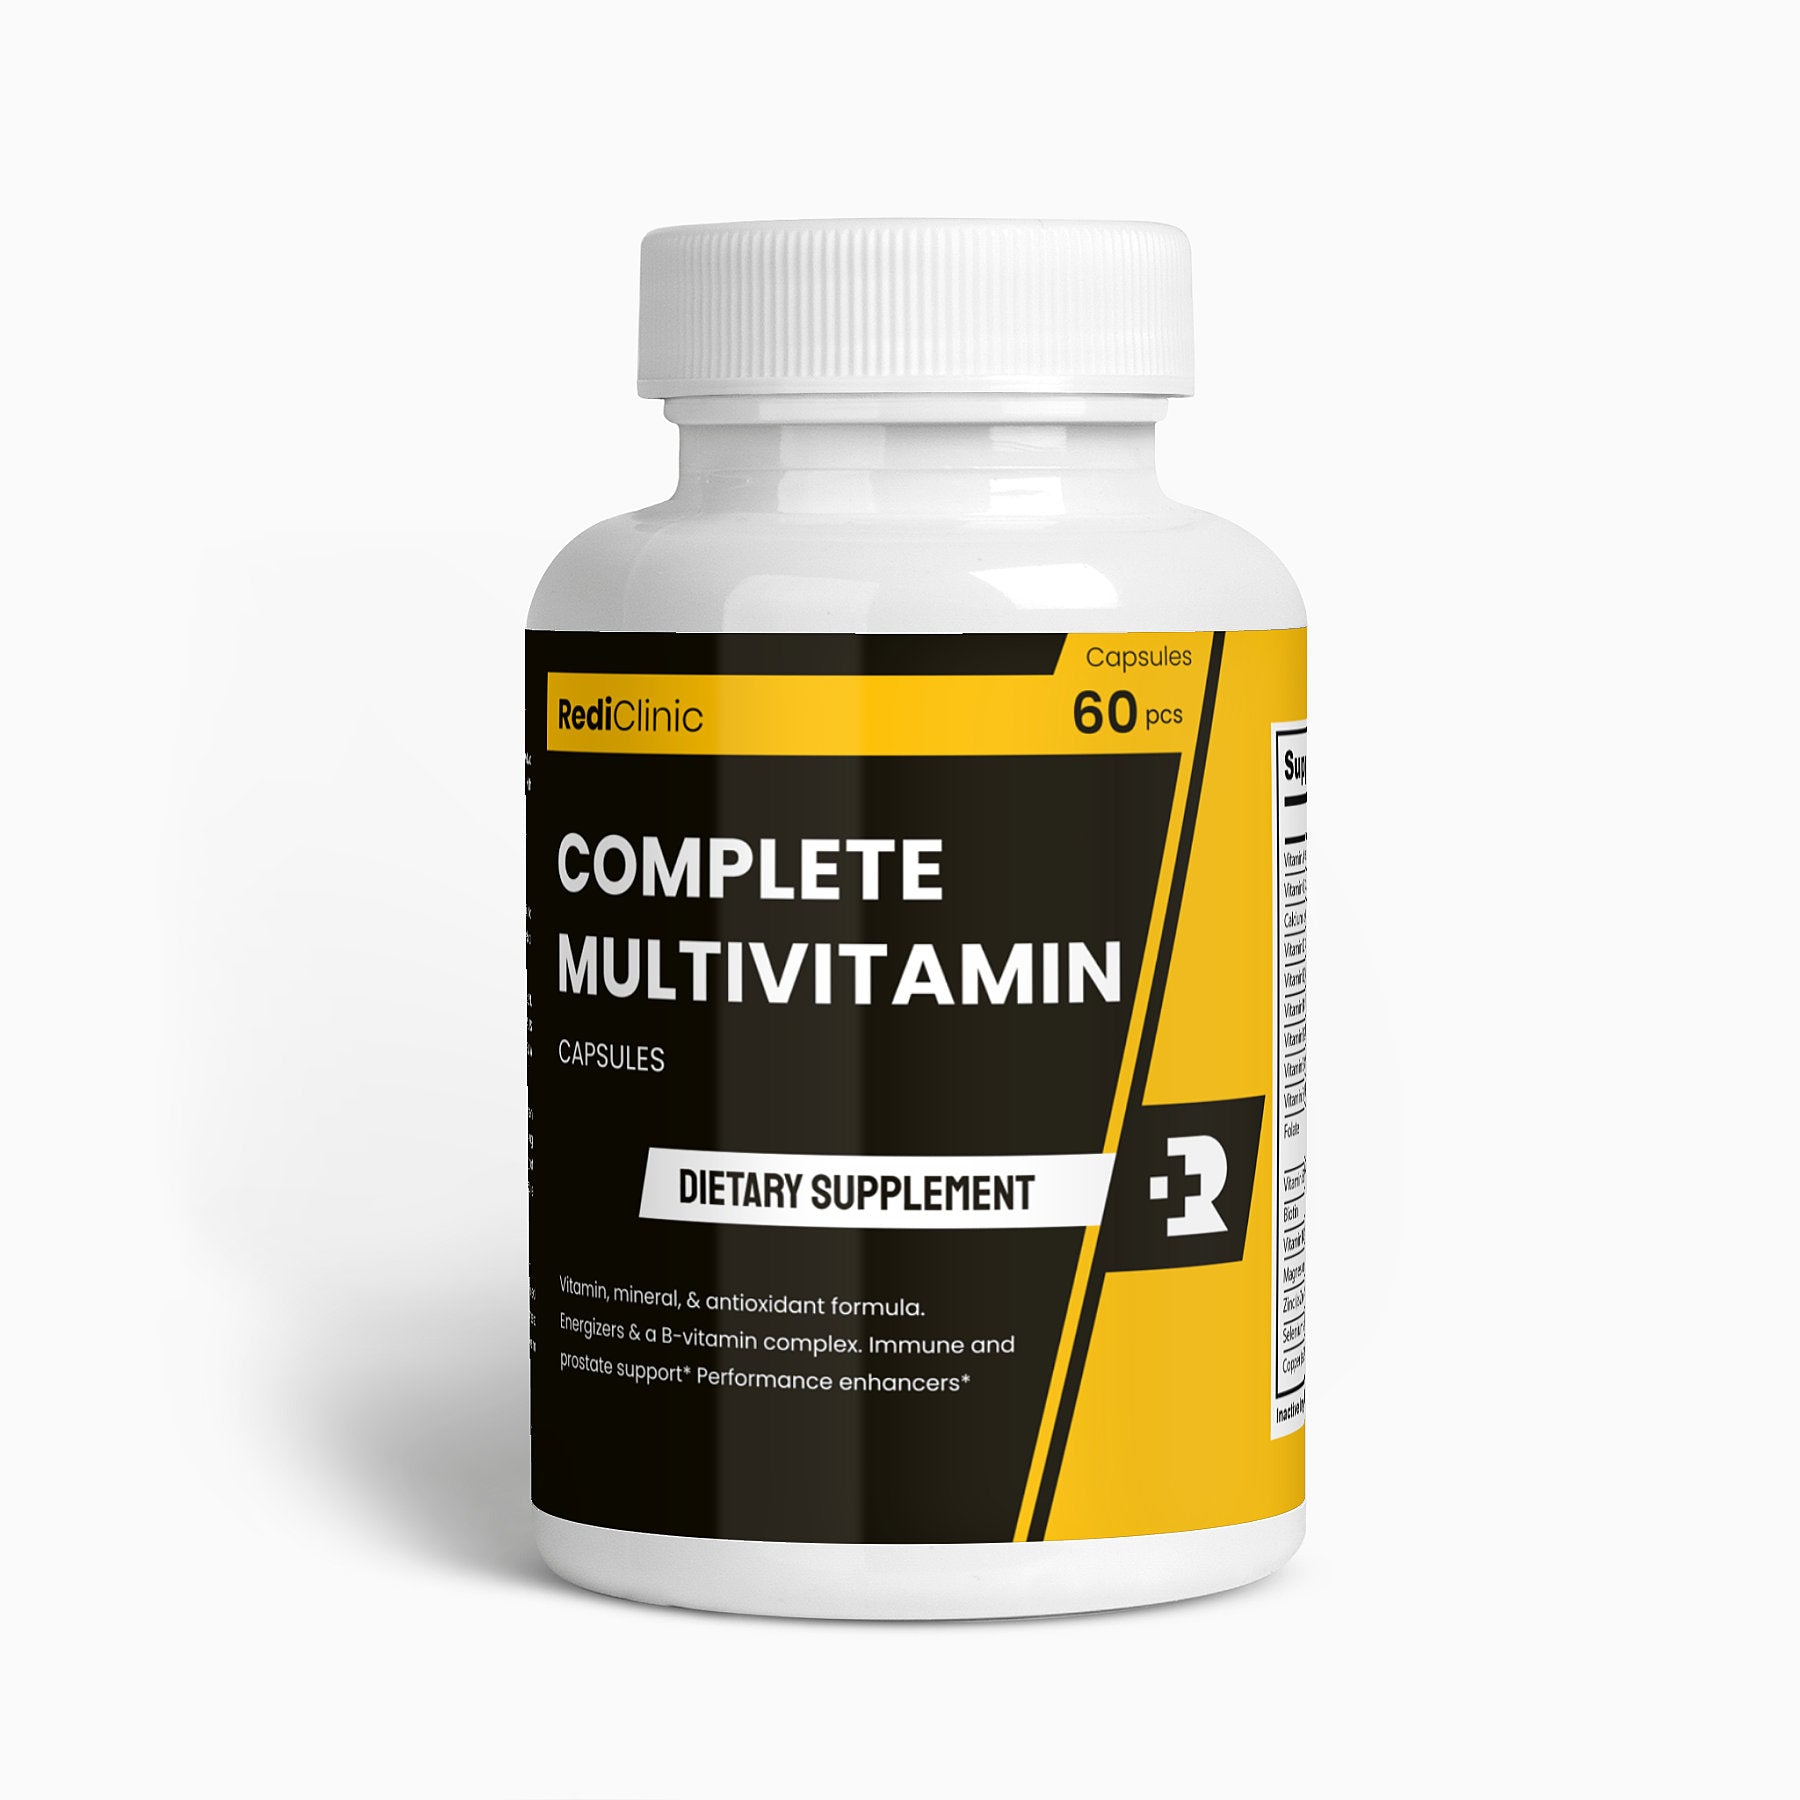 RediClinic Complete Multivitamin